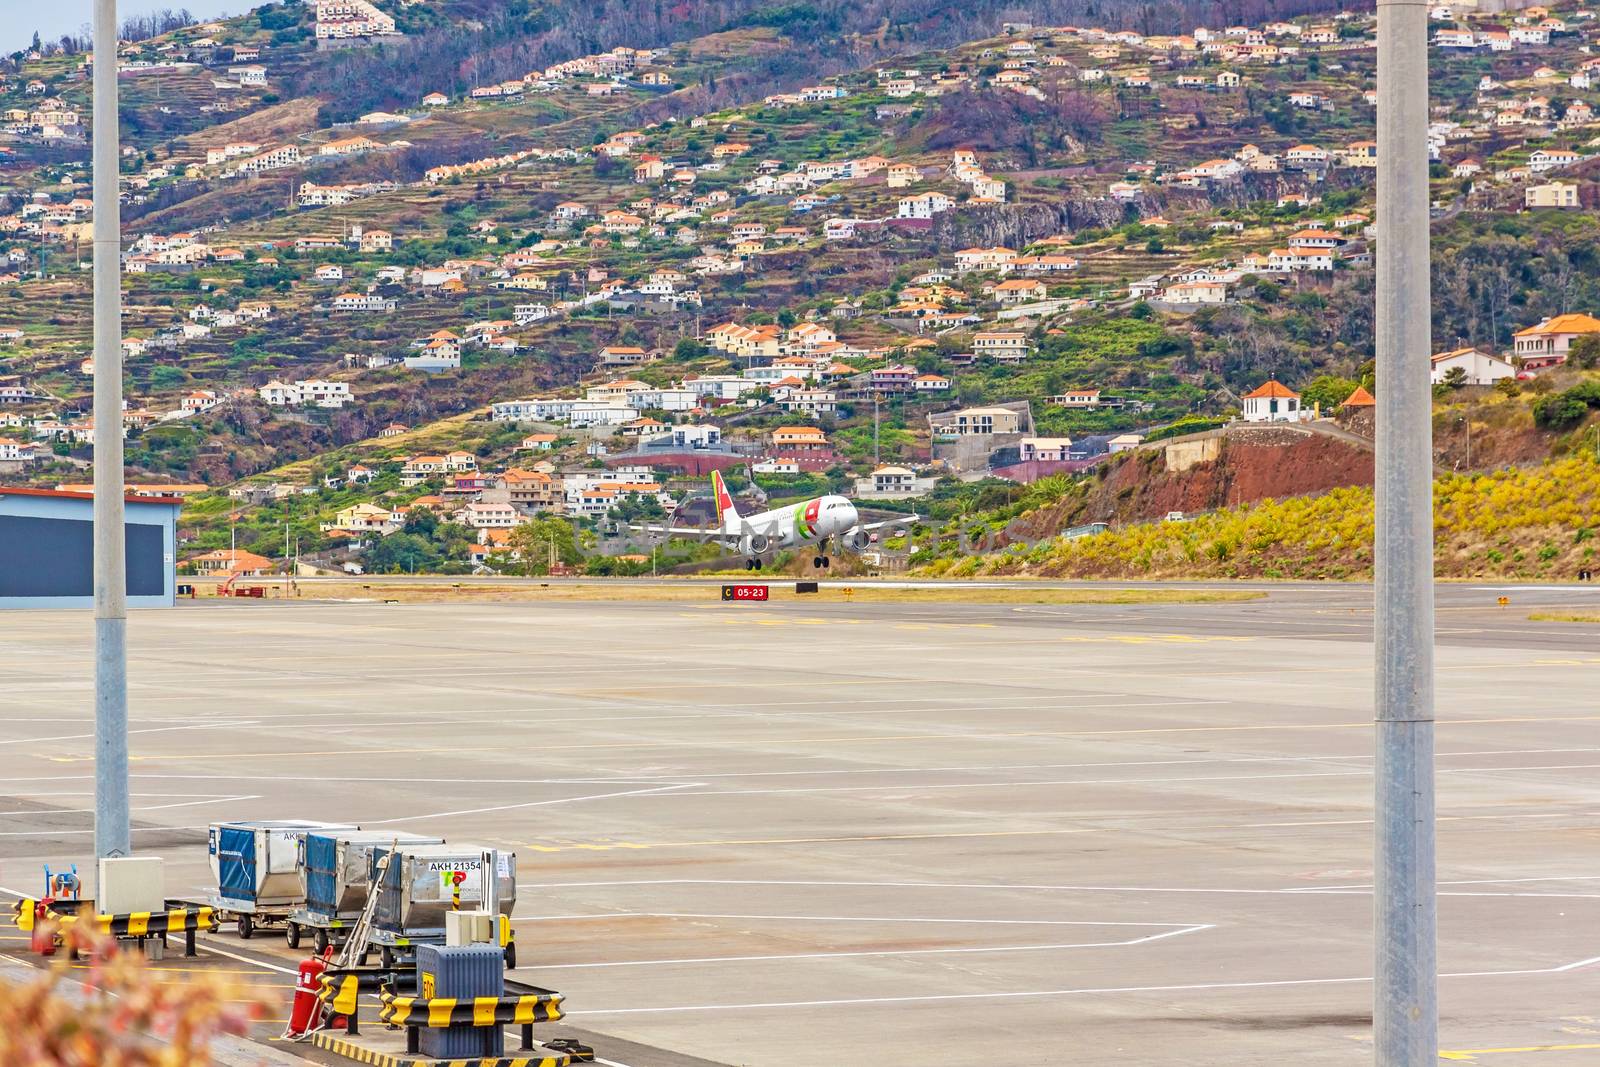 Airport Madeira - Airbus A318 by aldorado